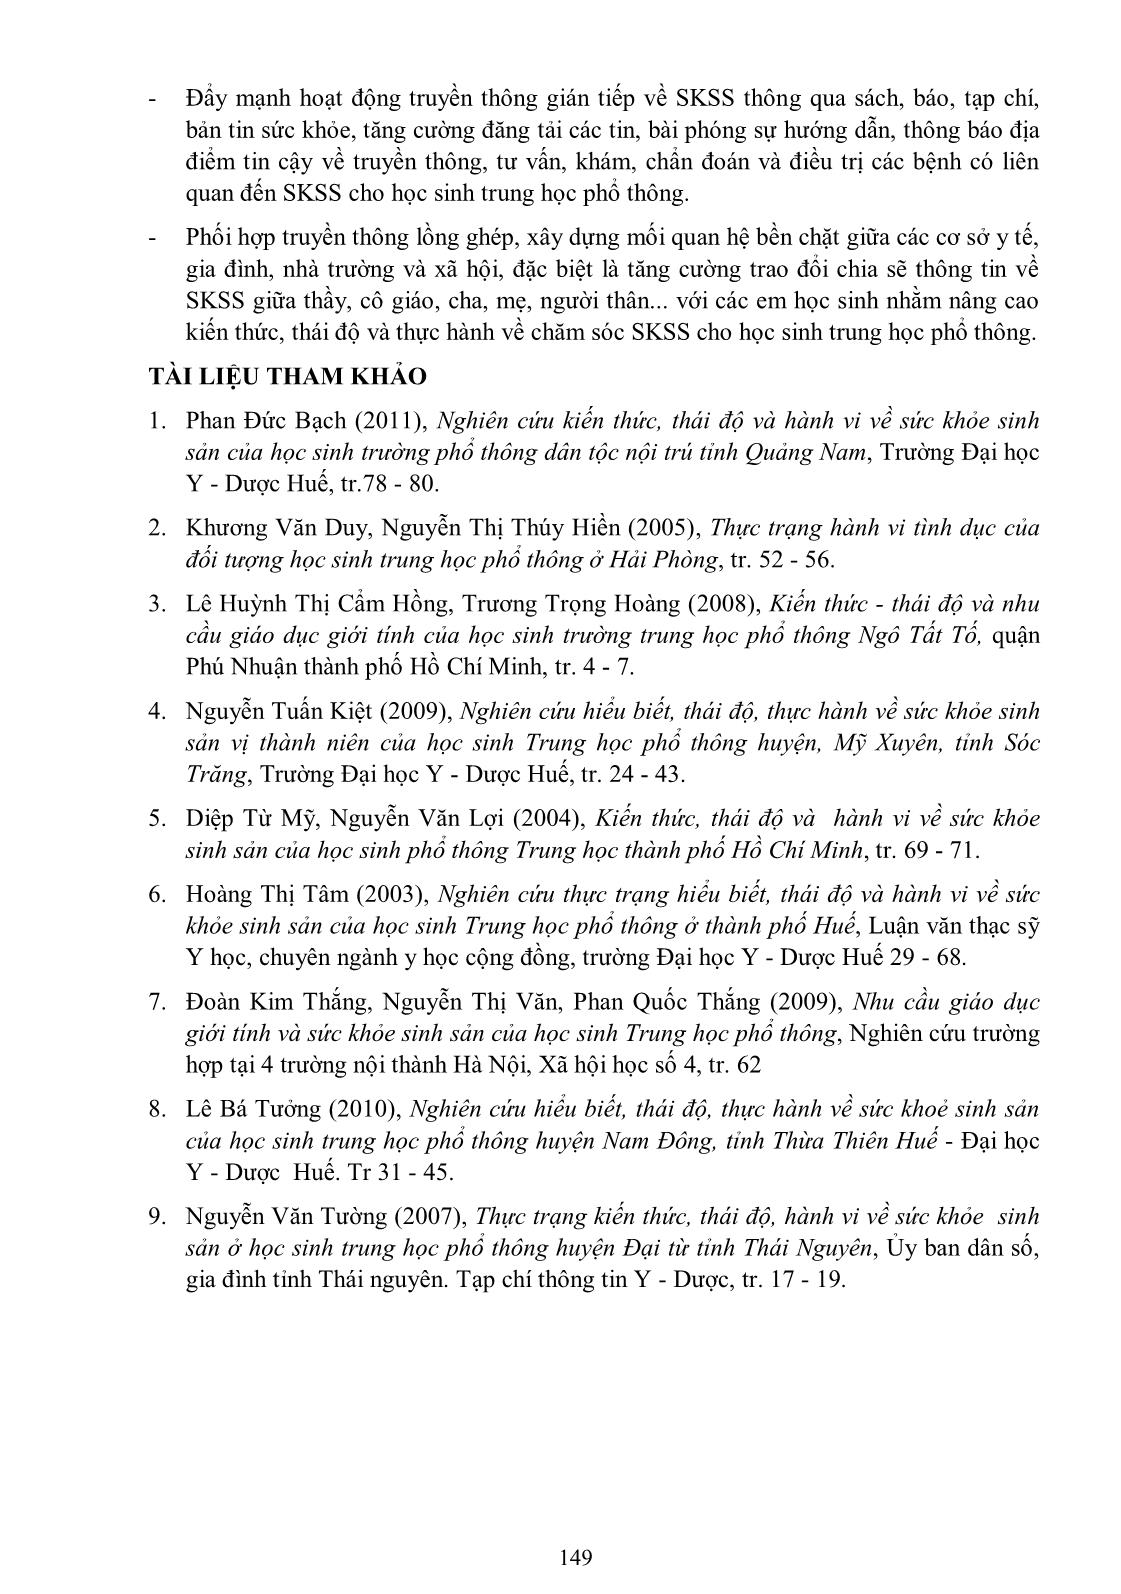 Nghiên cứu về kiến thức, thái độ, thực hành sức khỏe sinh sản vị thành niên của học sinh trung học phổ thông tại thành phố Đồng Hới, tỉnh Quảng Bình, năm 2013 trang 7